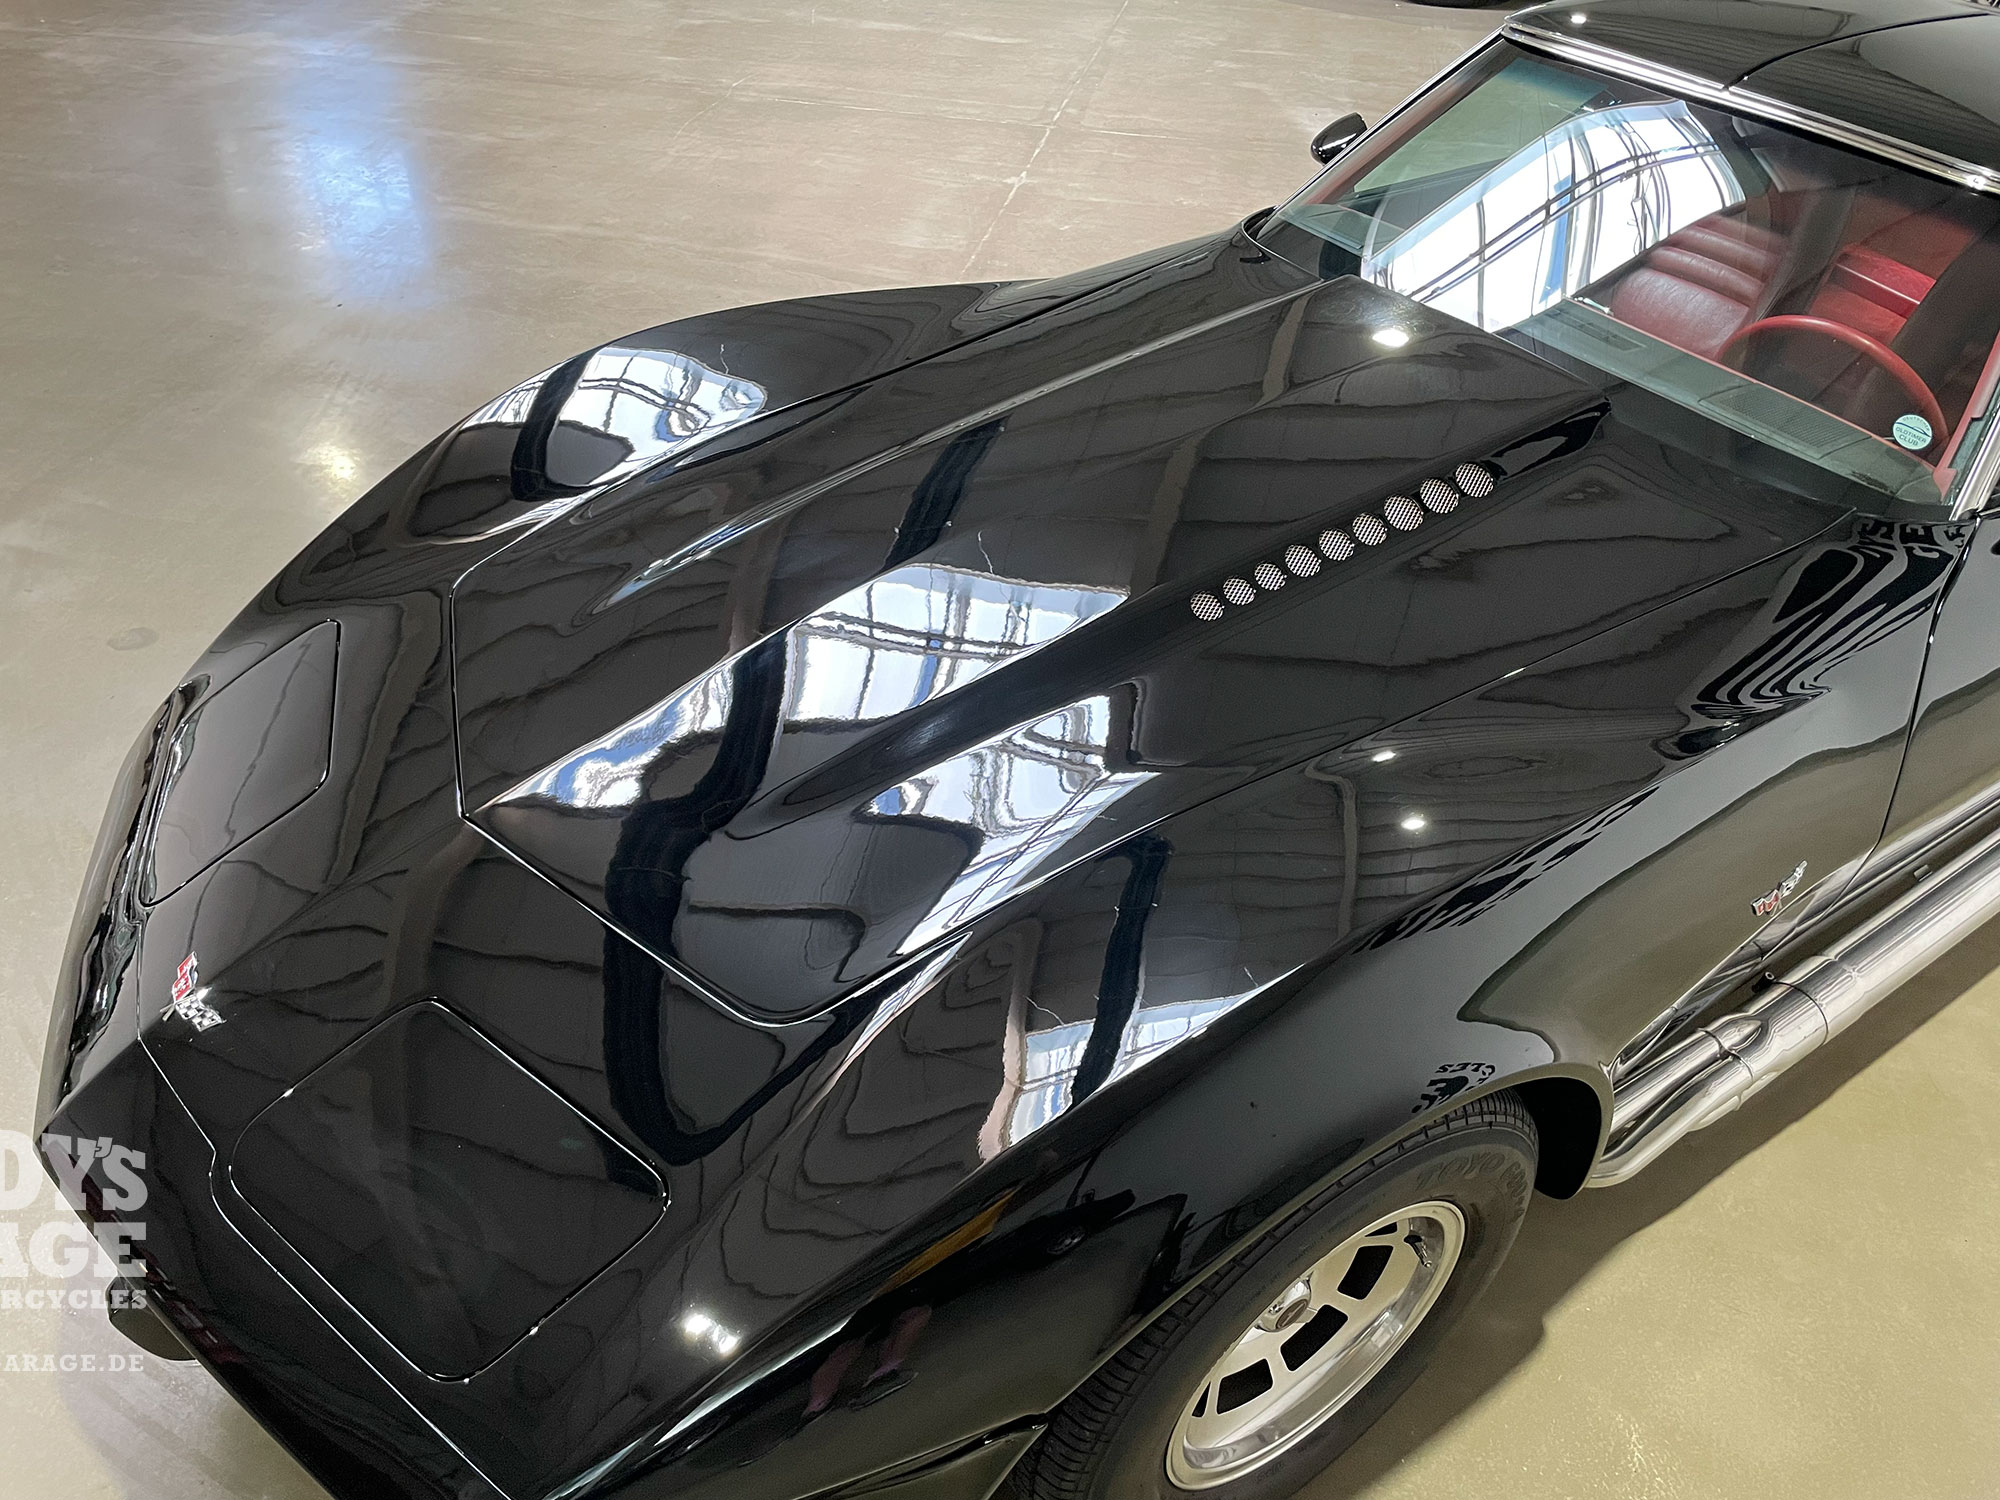 Corvette C3 Targa 1978 black metallic | Buddy's Garage Bad Oeynhausen